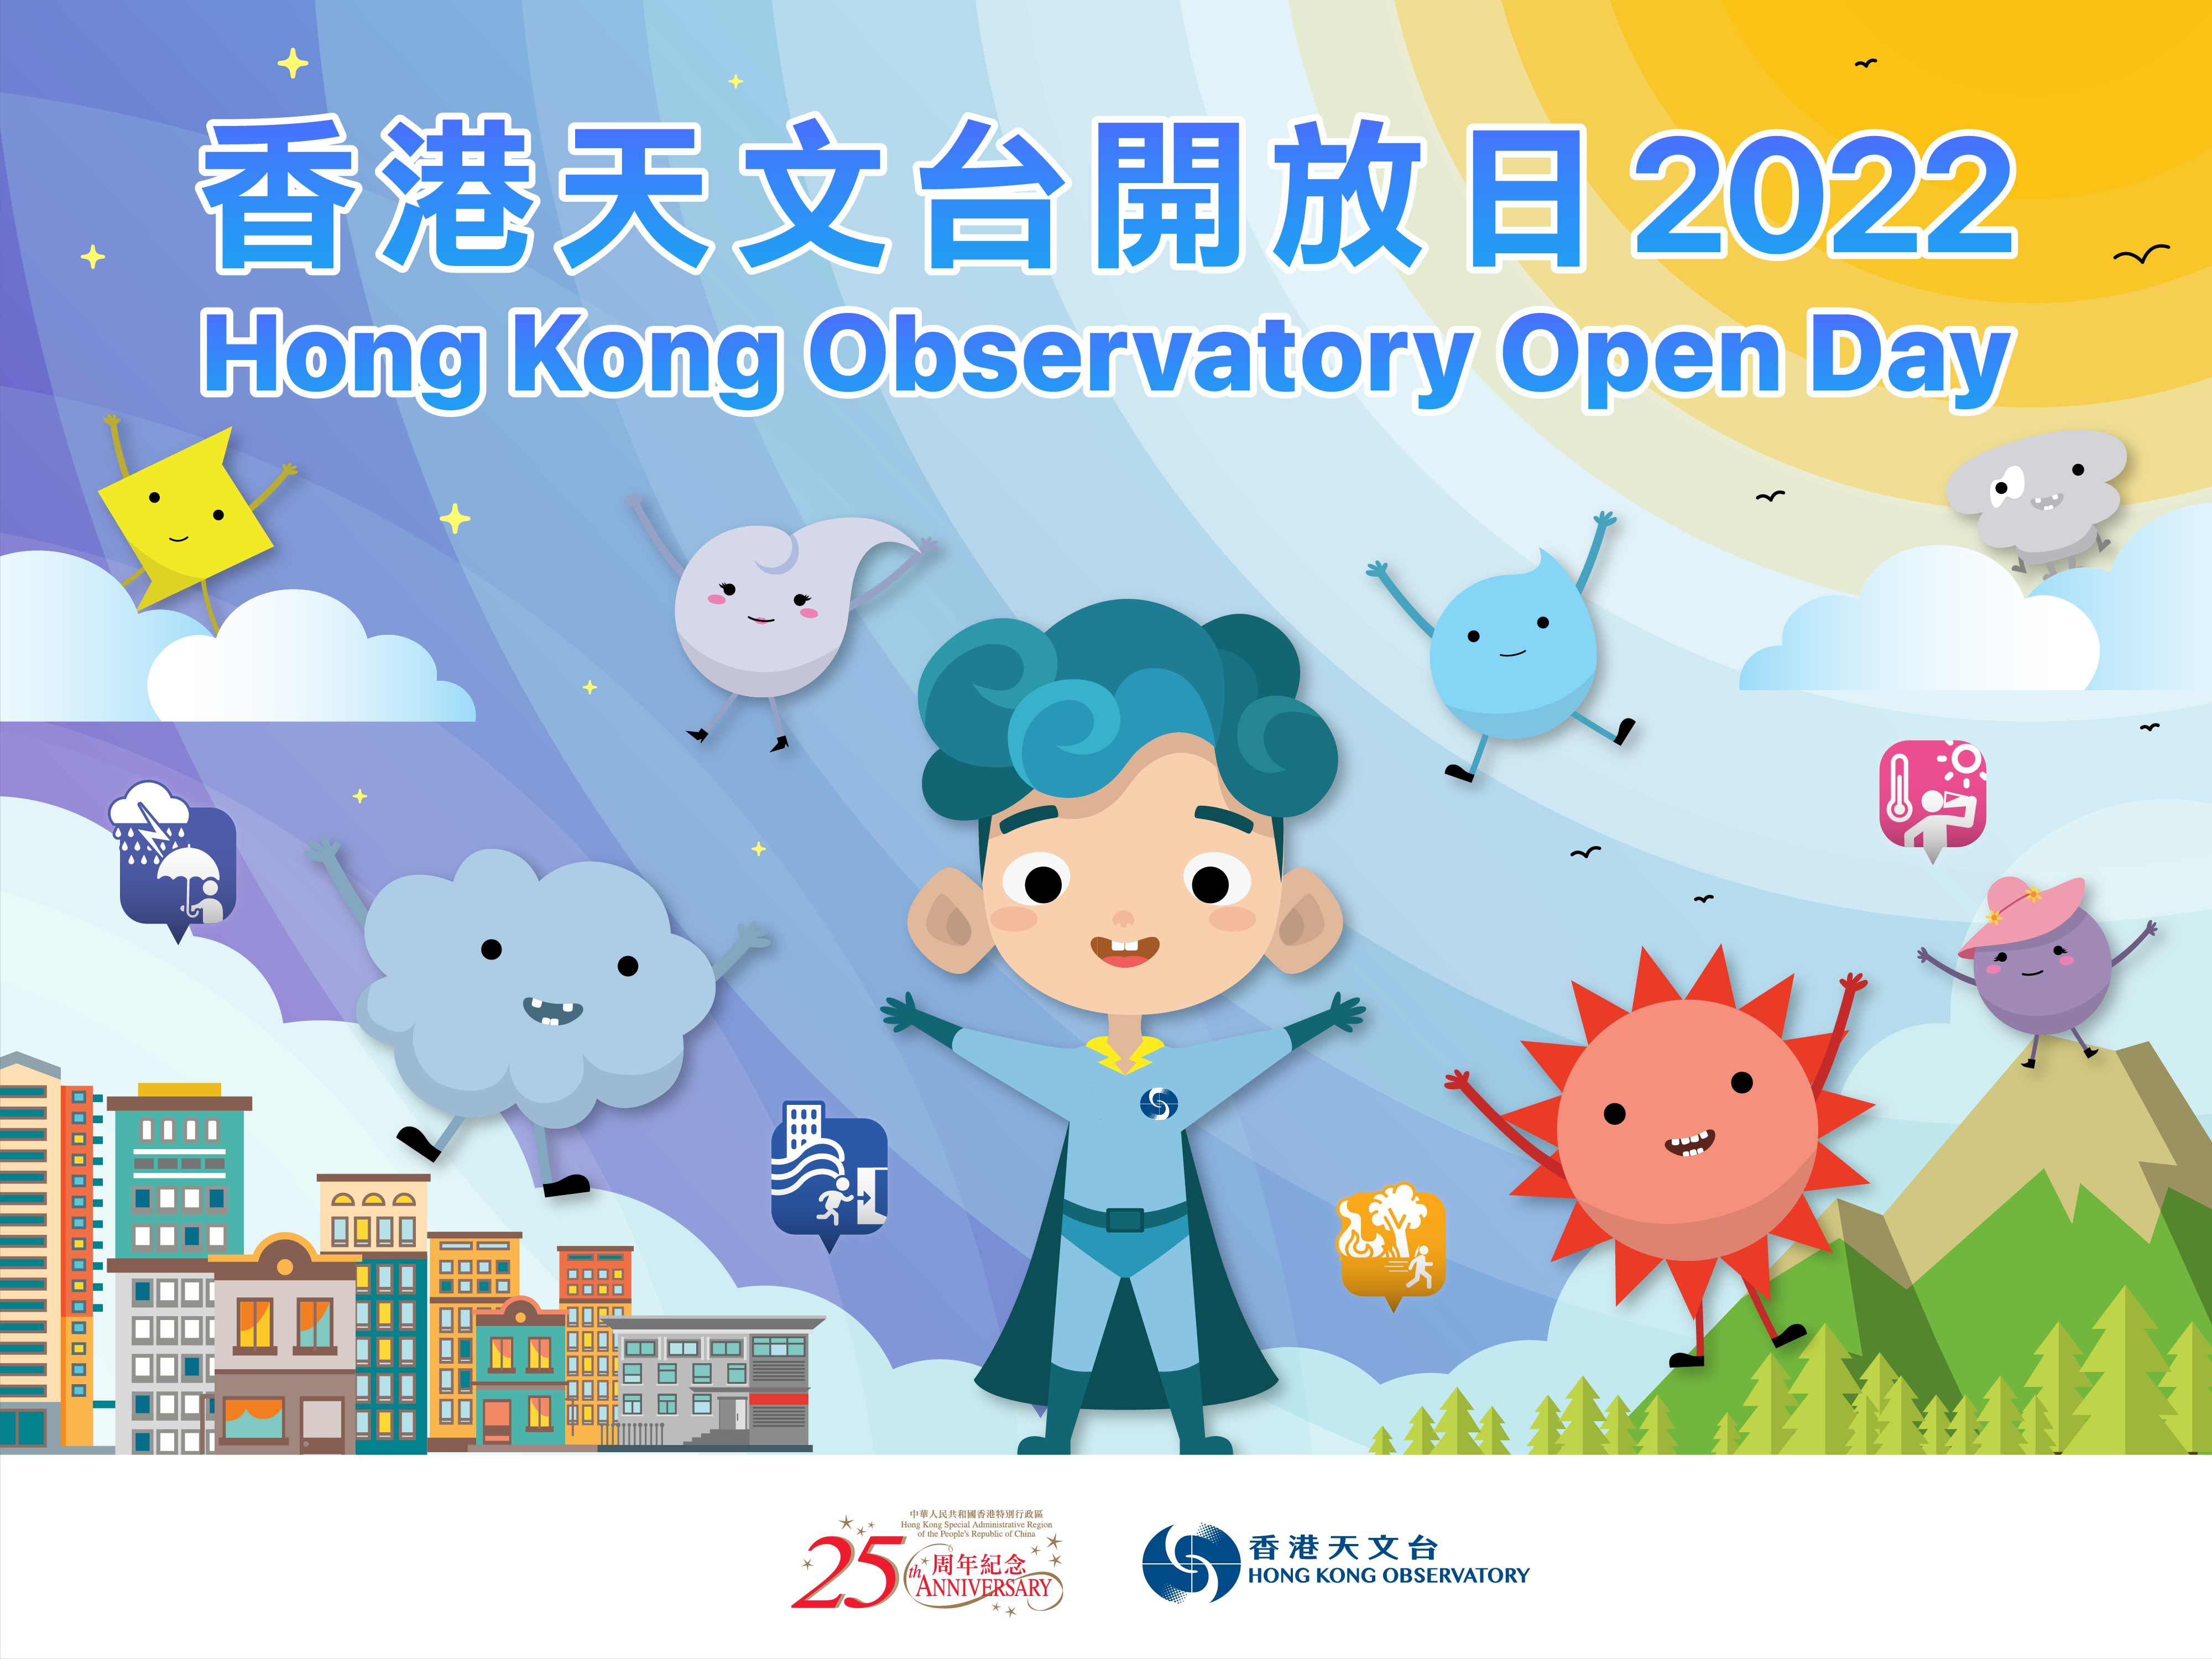 Hong Kong Observatory Open Day 2022